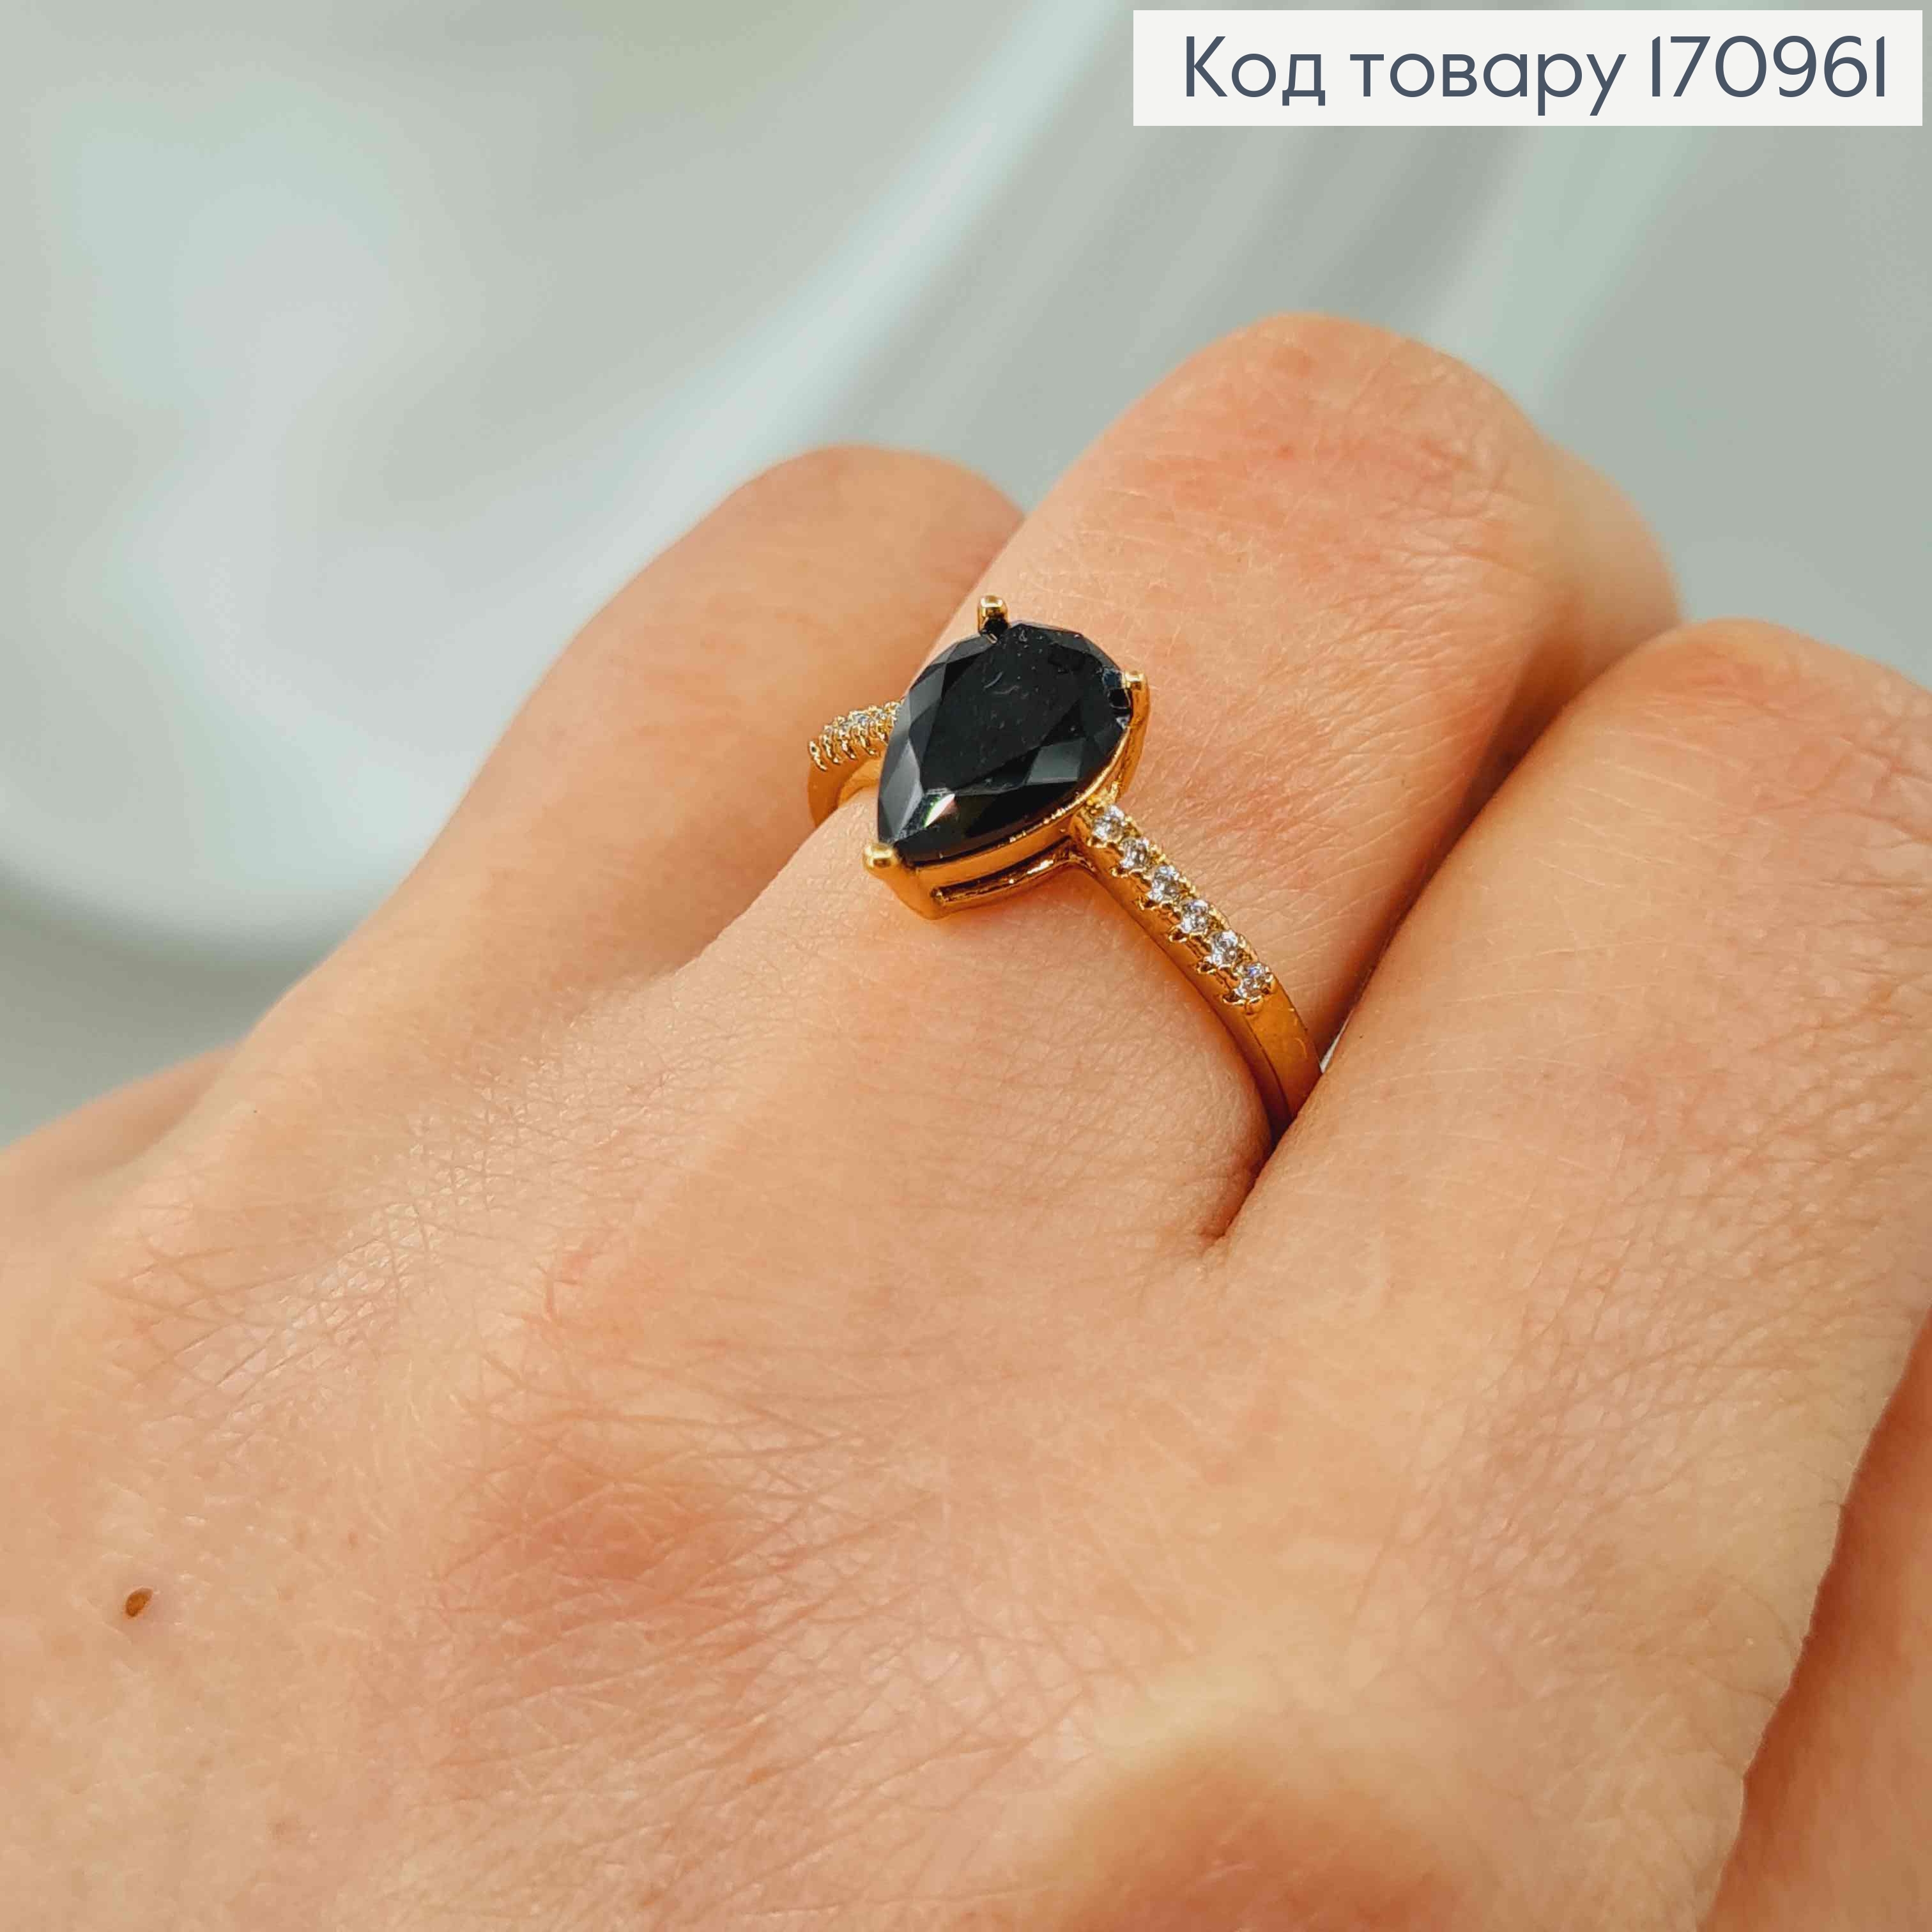 Кольцо в камешках, с черным камешком капелькой, Xuping 18К. 170961 фото 2